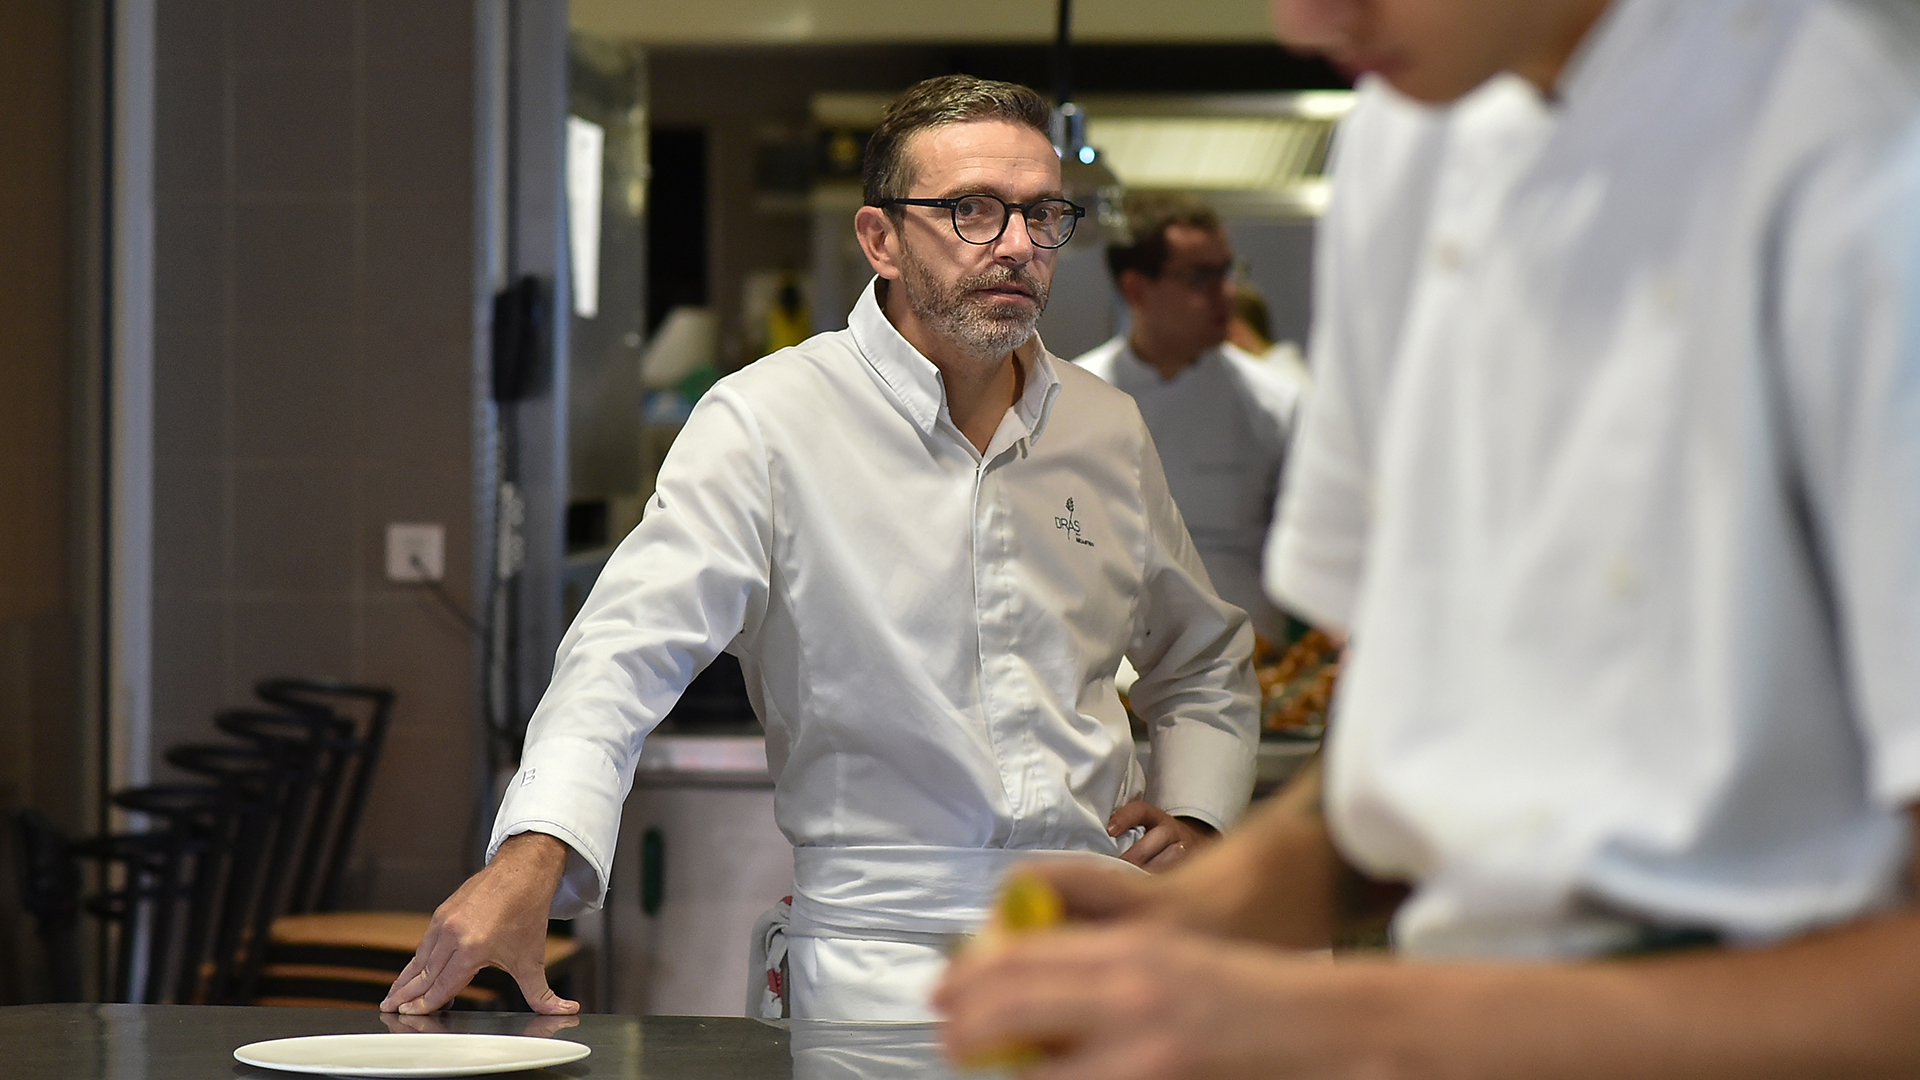 La Guía Michelin retira por primera vez un restaurante de su lista a petición del chef